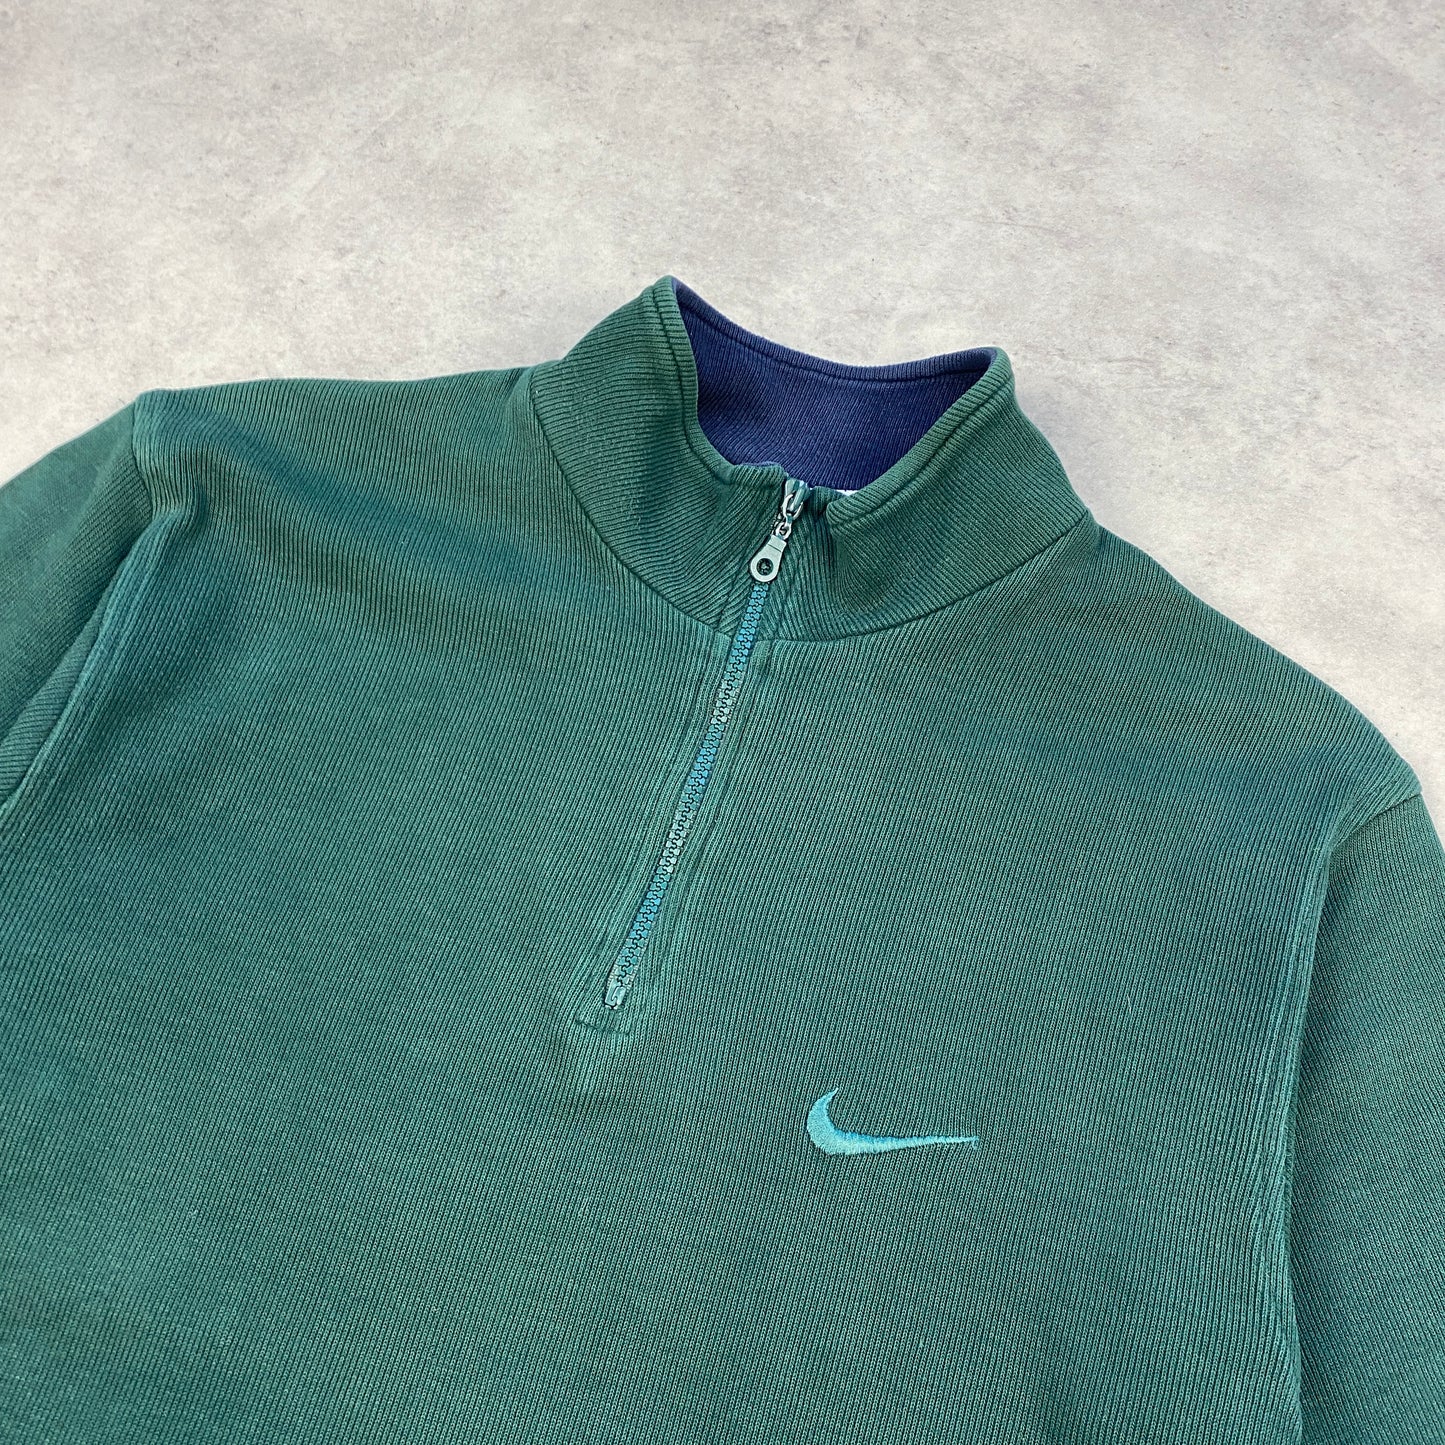 Nike RARE 1/4 zip heavyweight sweater (M)